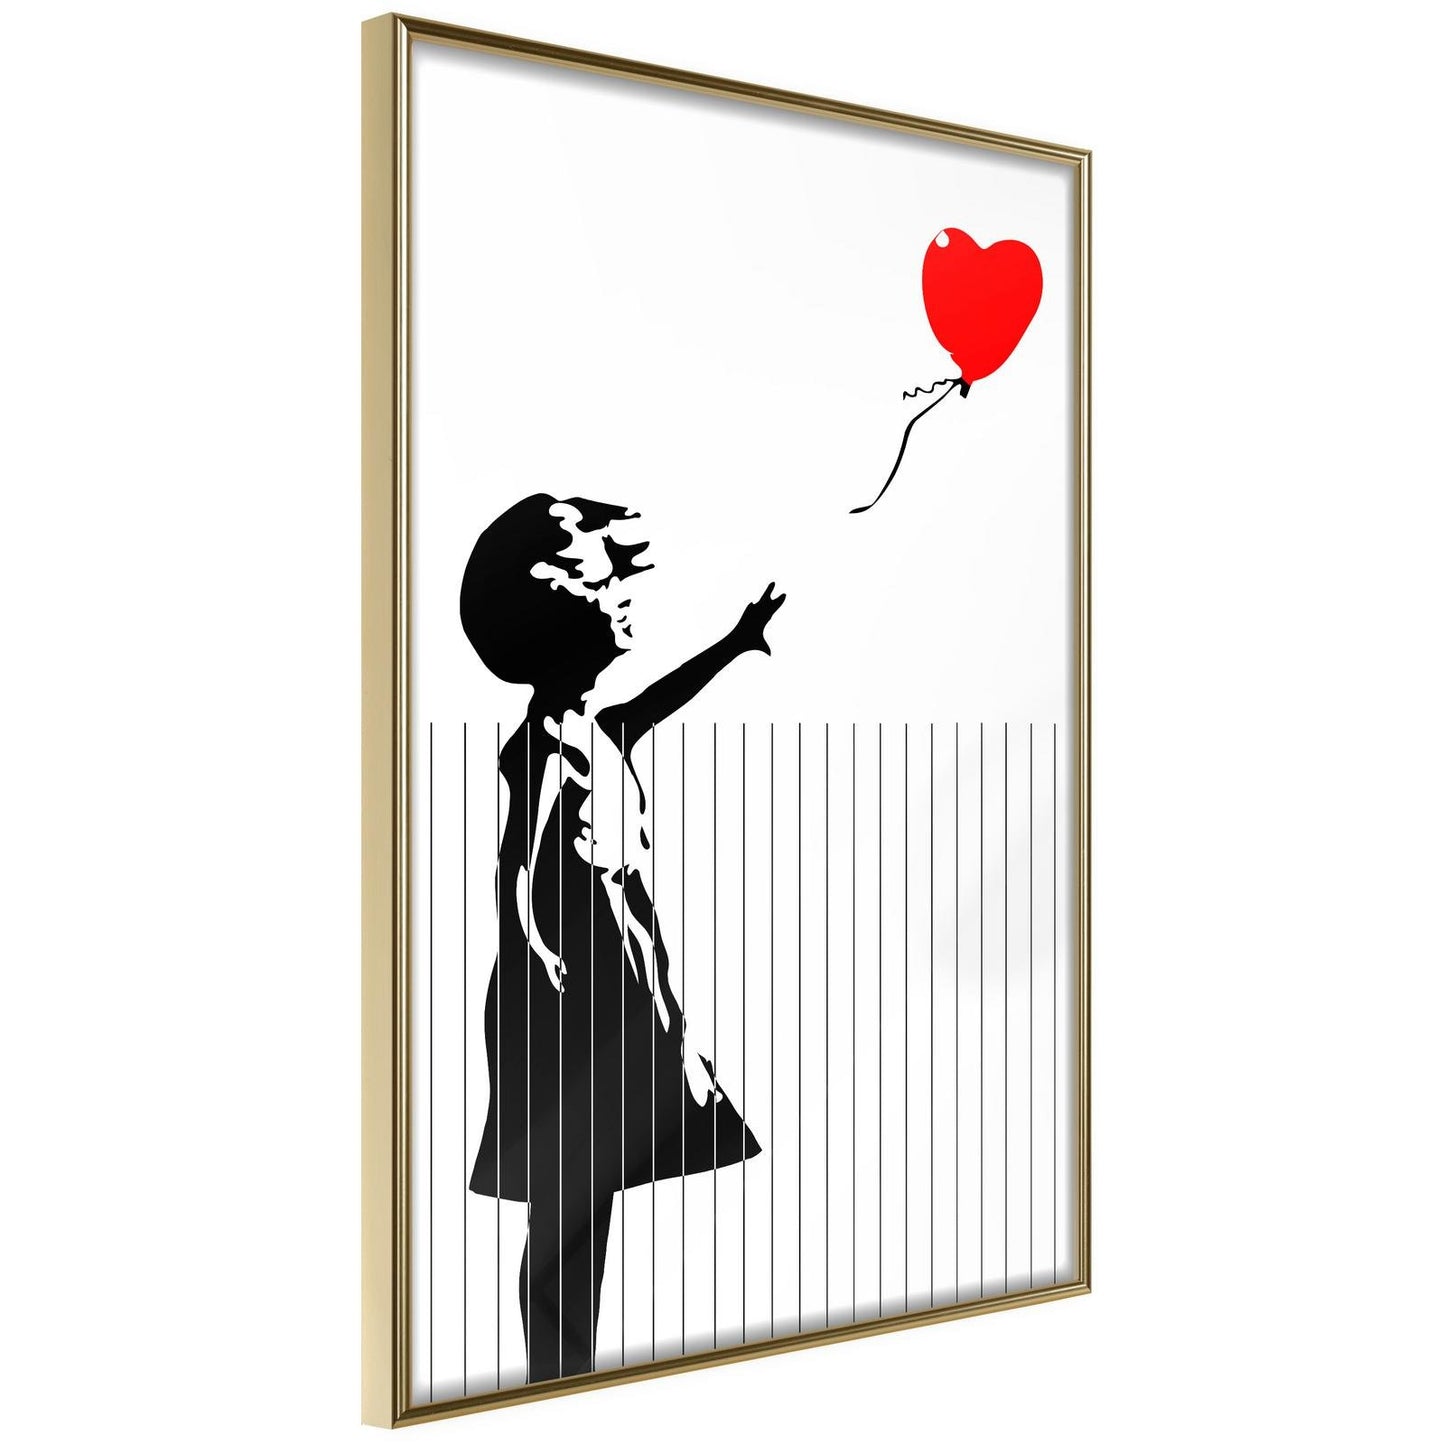 Banksy: Love is in the Bin